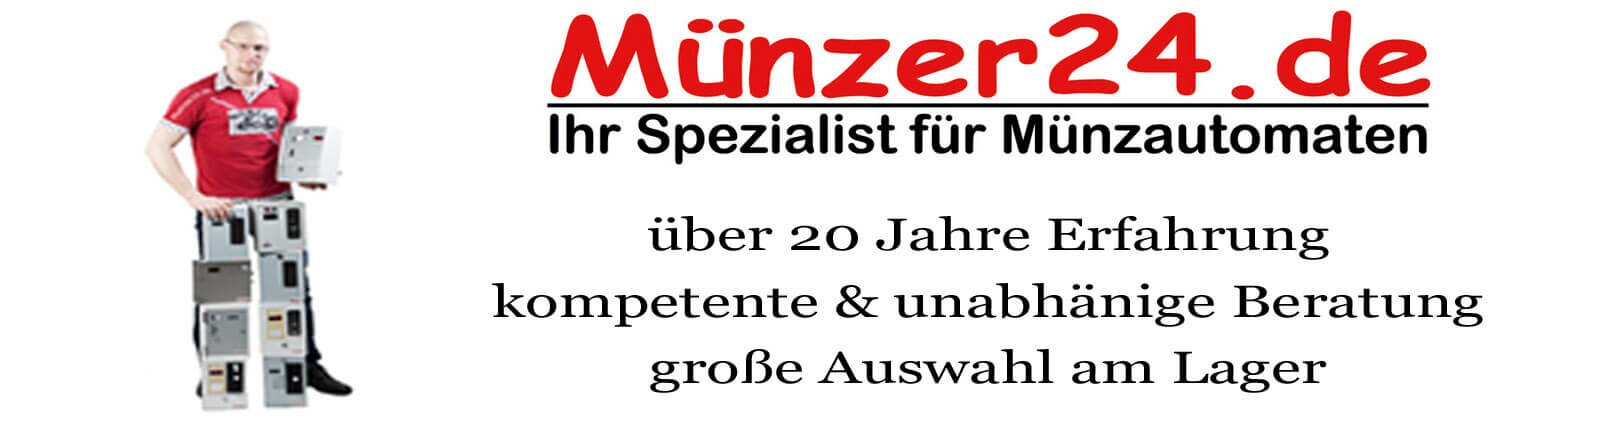 Münzer24.de - Ihr Spezialist für Münzautomaten und...